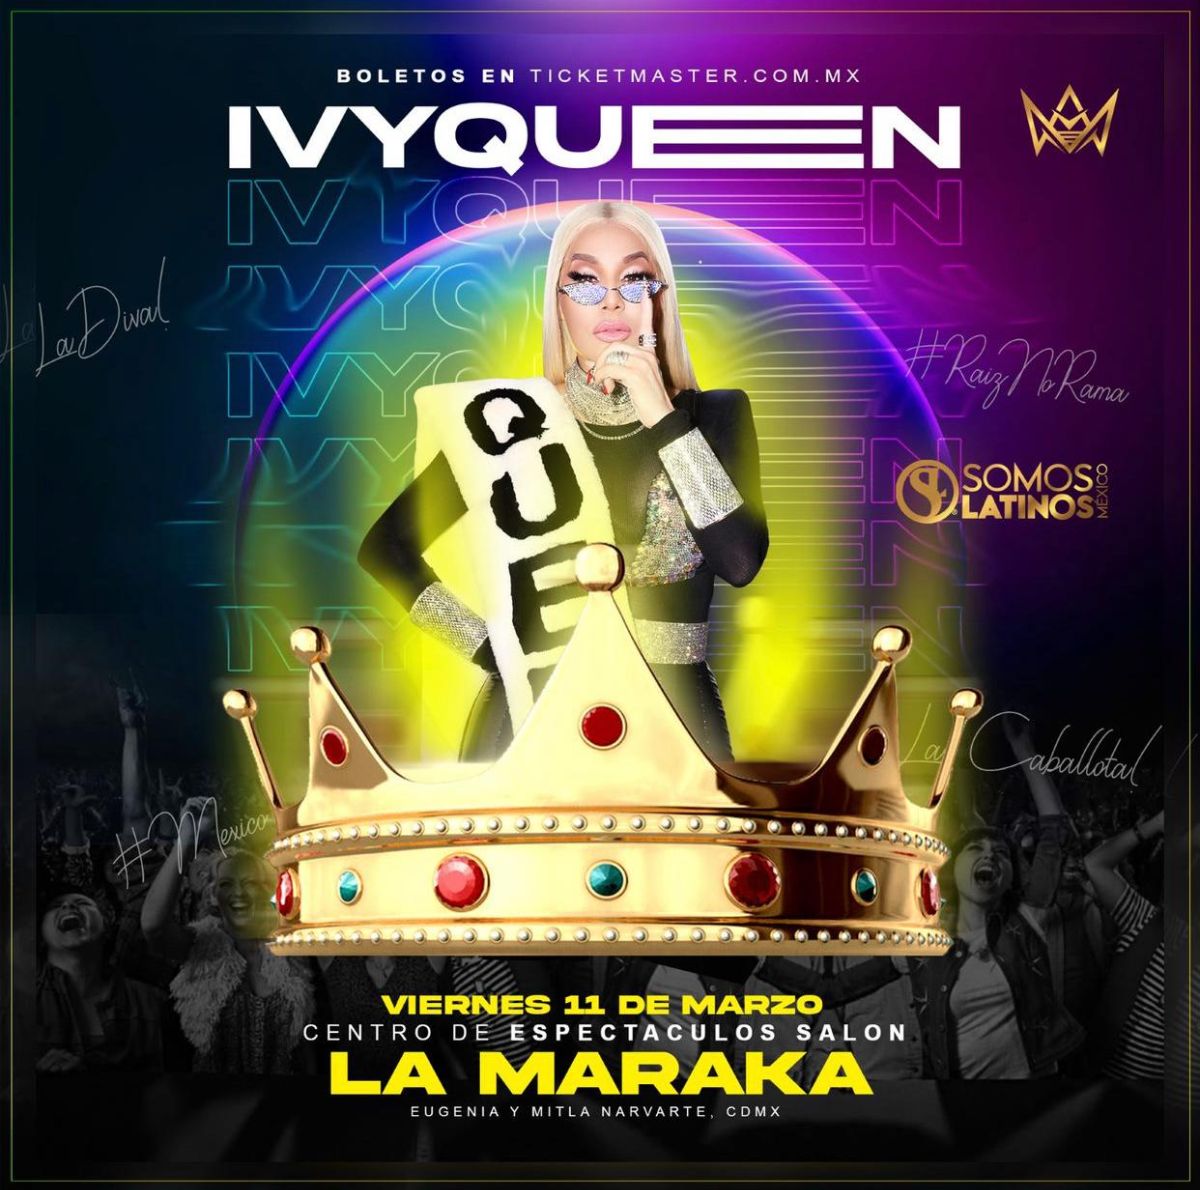 Ivy Queen se presenta hoy viernes en La Maraka en la CDMX